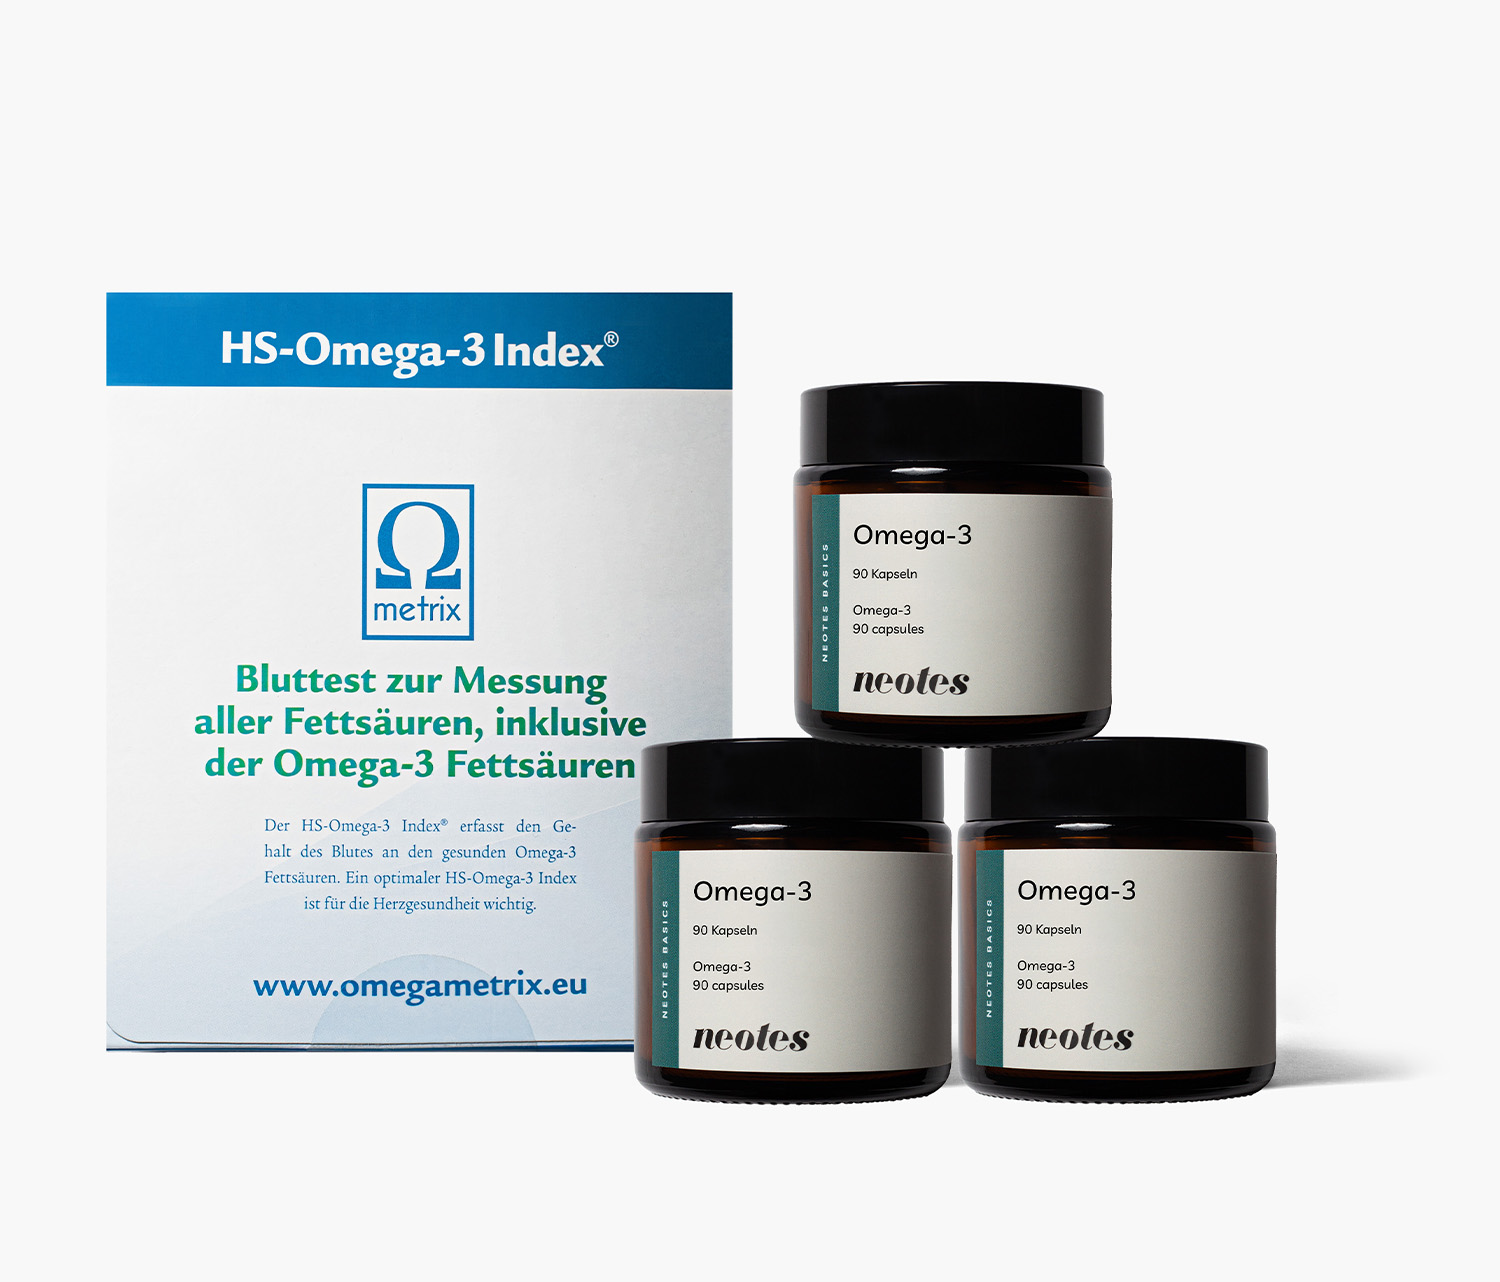 ElixierBundle-Omega-3-Test-Omega-3-Kapseln-Produktseite